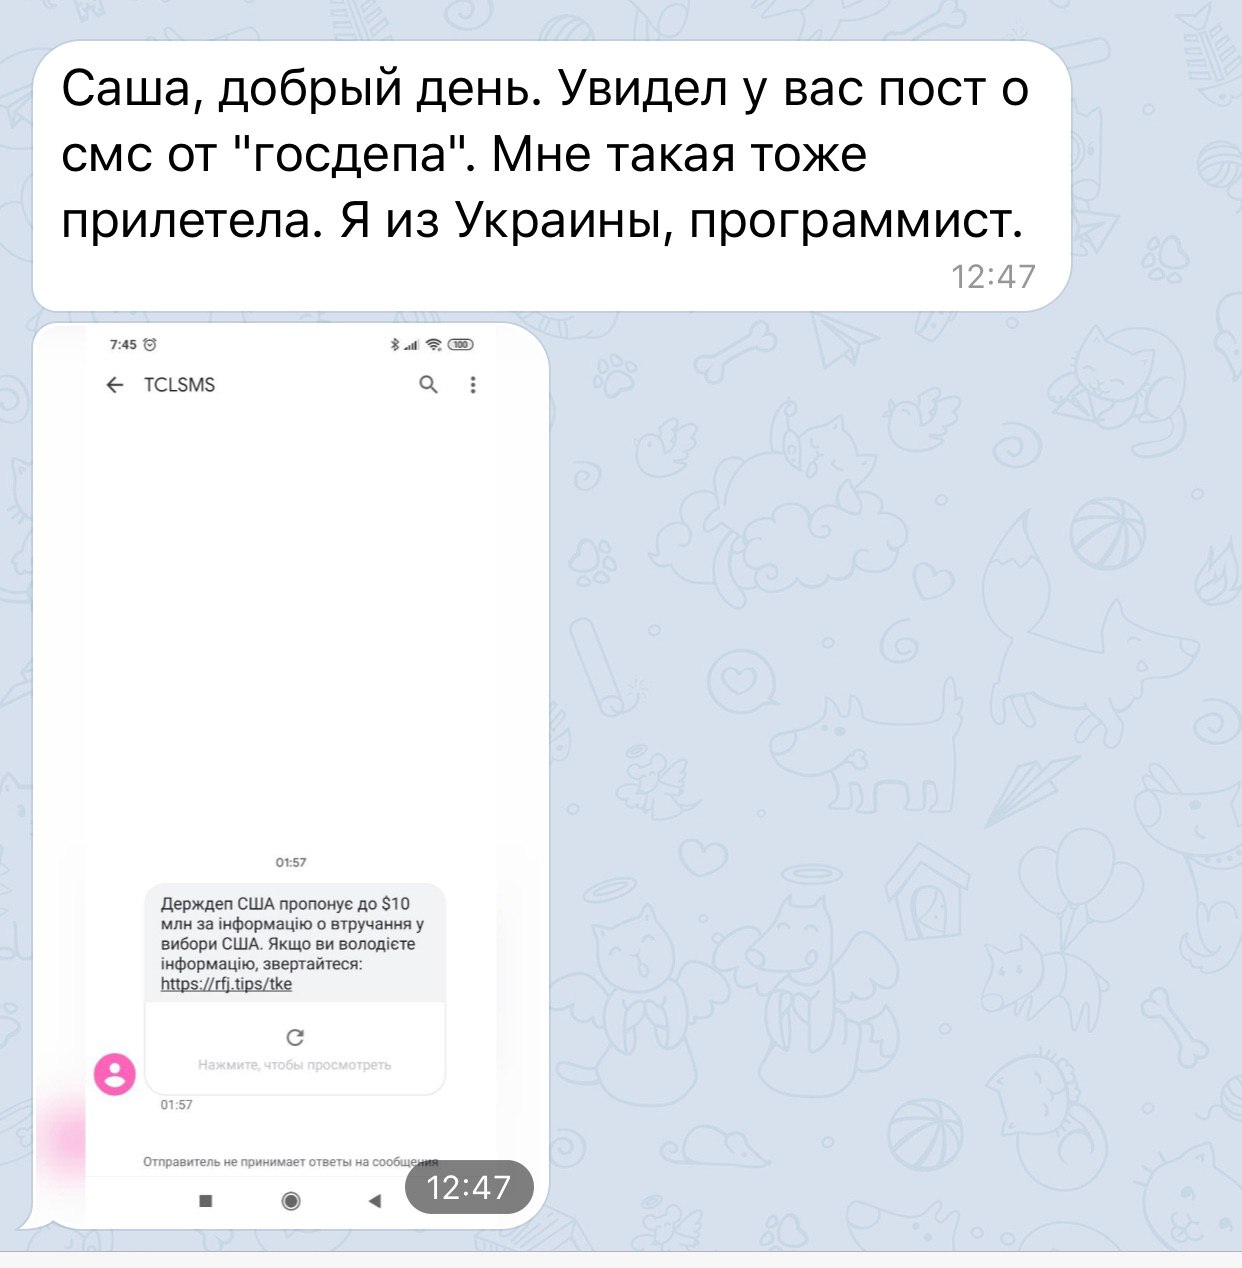 Telegram не приходит смс